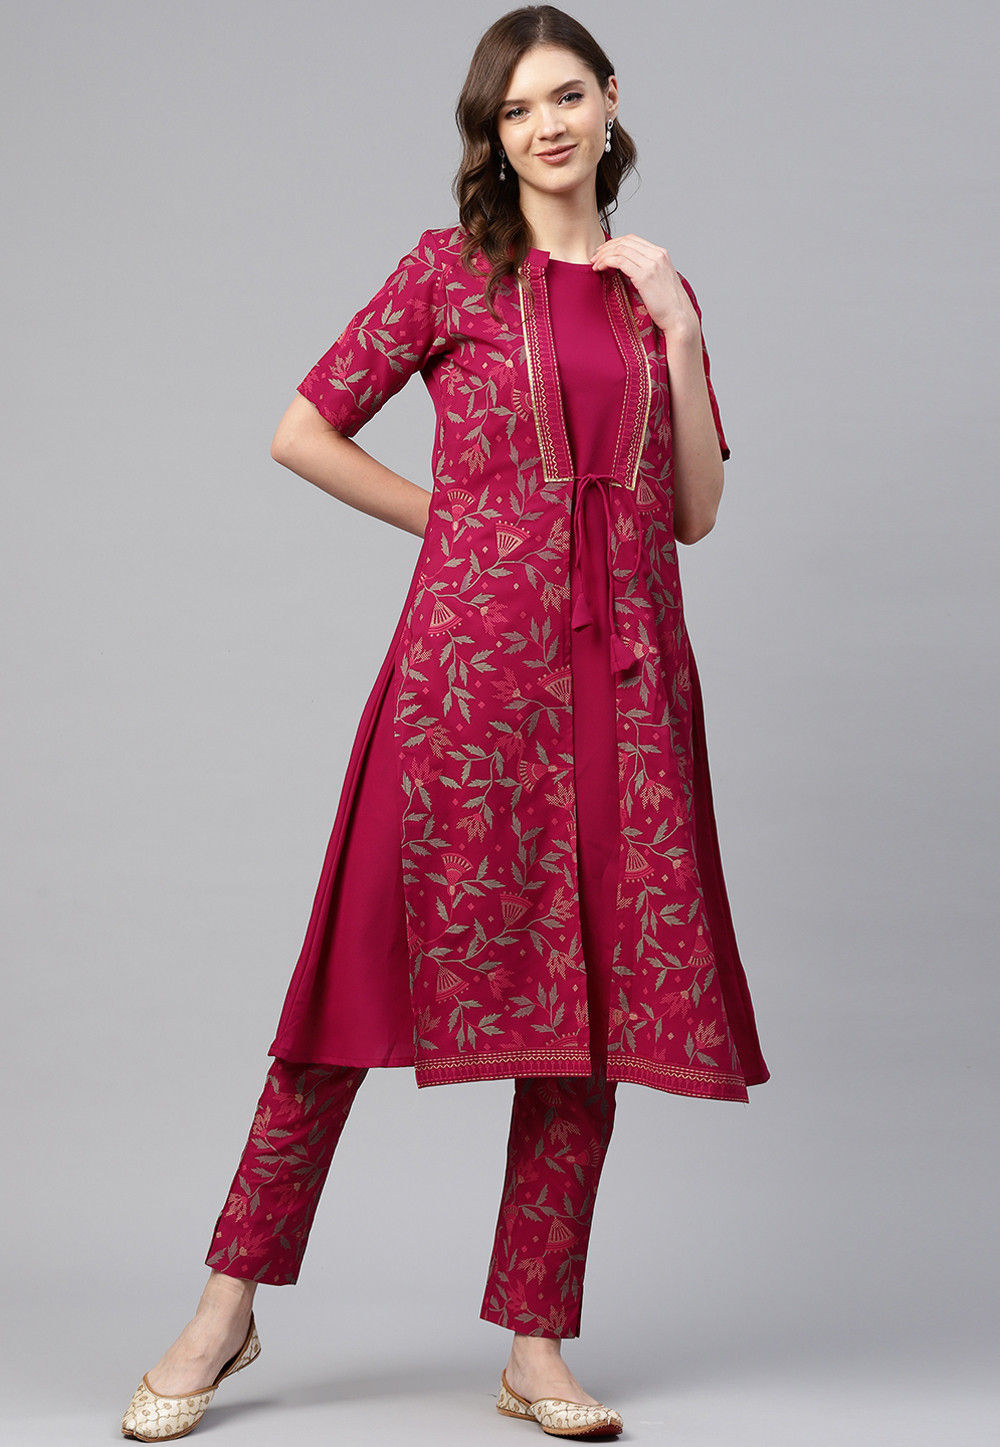 3 Pc Indian Mens Wedding Festival Ethnic Wear Kurta Payjama Jacket Set  India | eBay